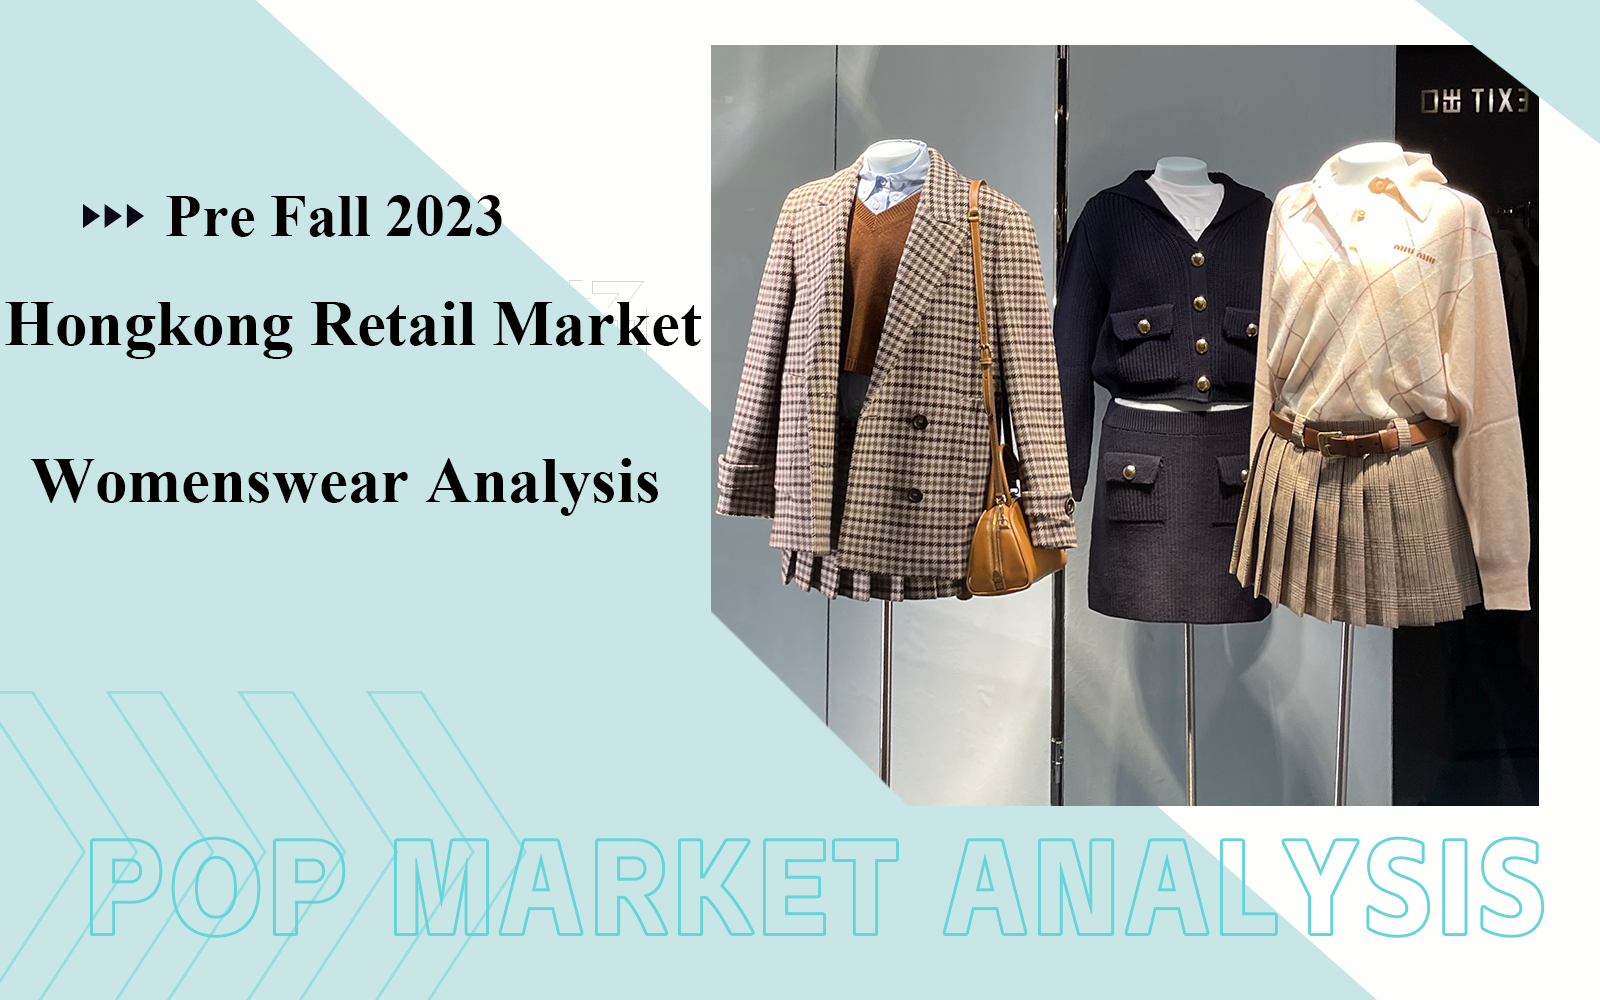 Women's Hongkong Retail Market Analysis in August